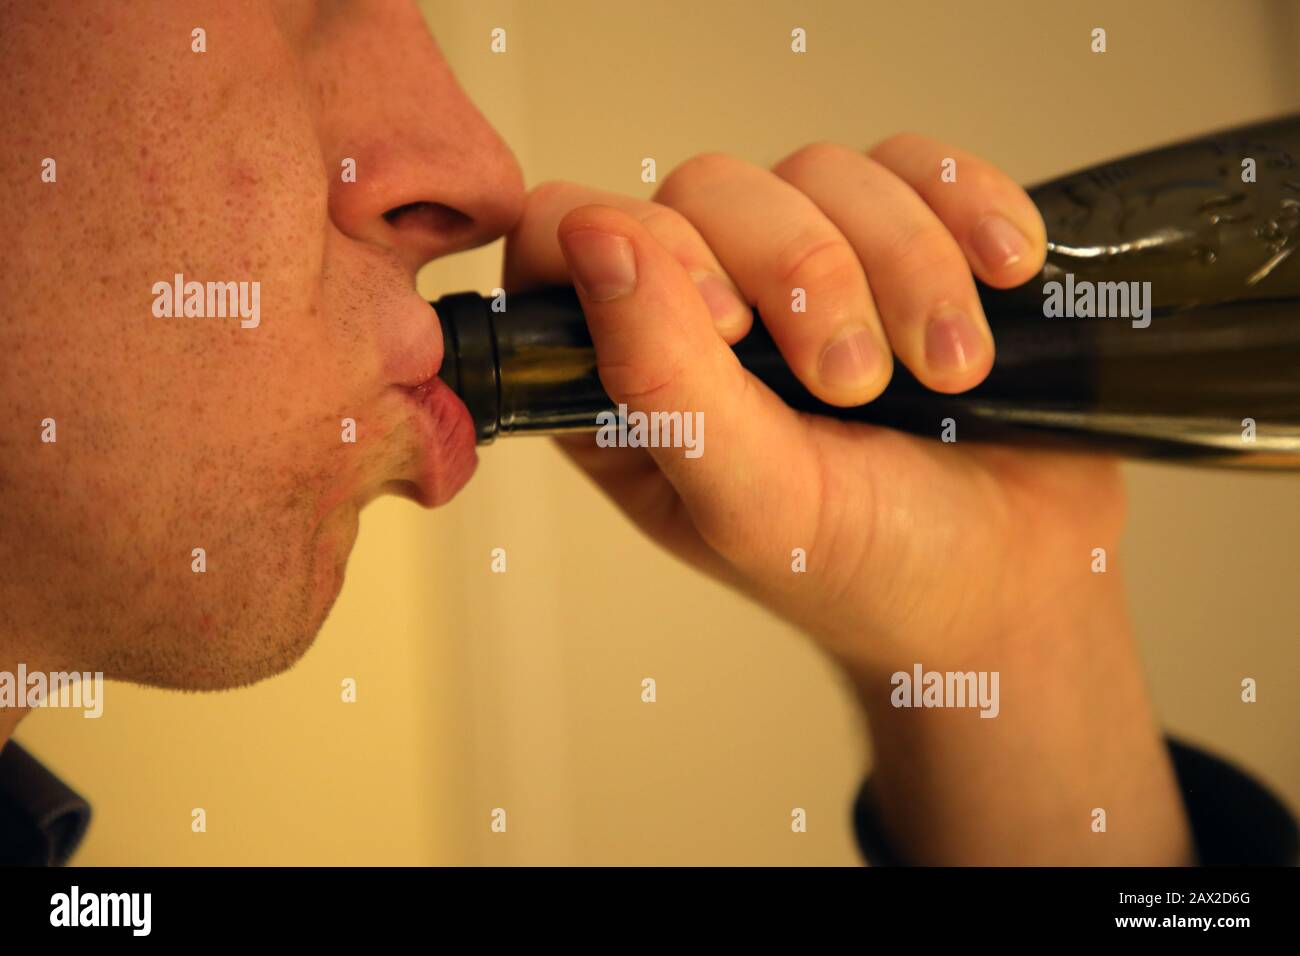 Un uomo caucasico bianco bevendo vino da una casa di bottiglia da solo. Triste modo di passare il tempo, comune per persone sole, depresse e alcoliche. Foto Stock